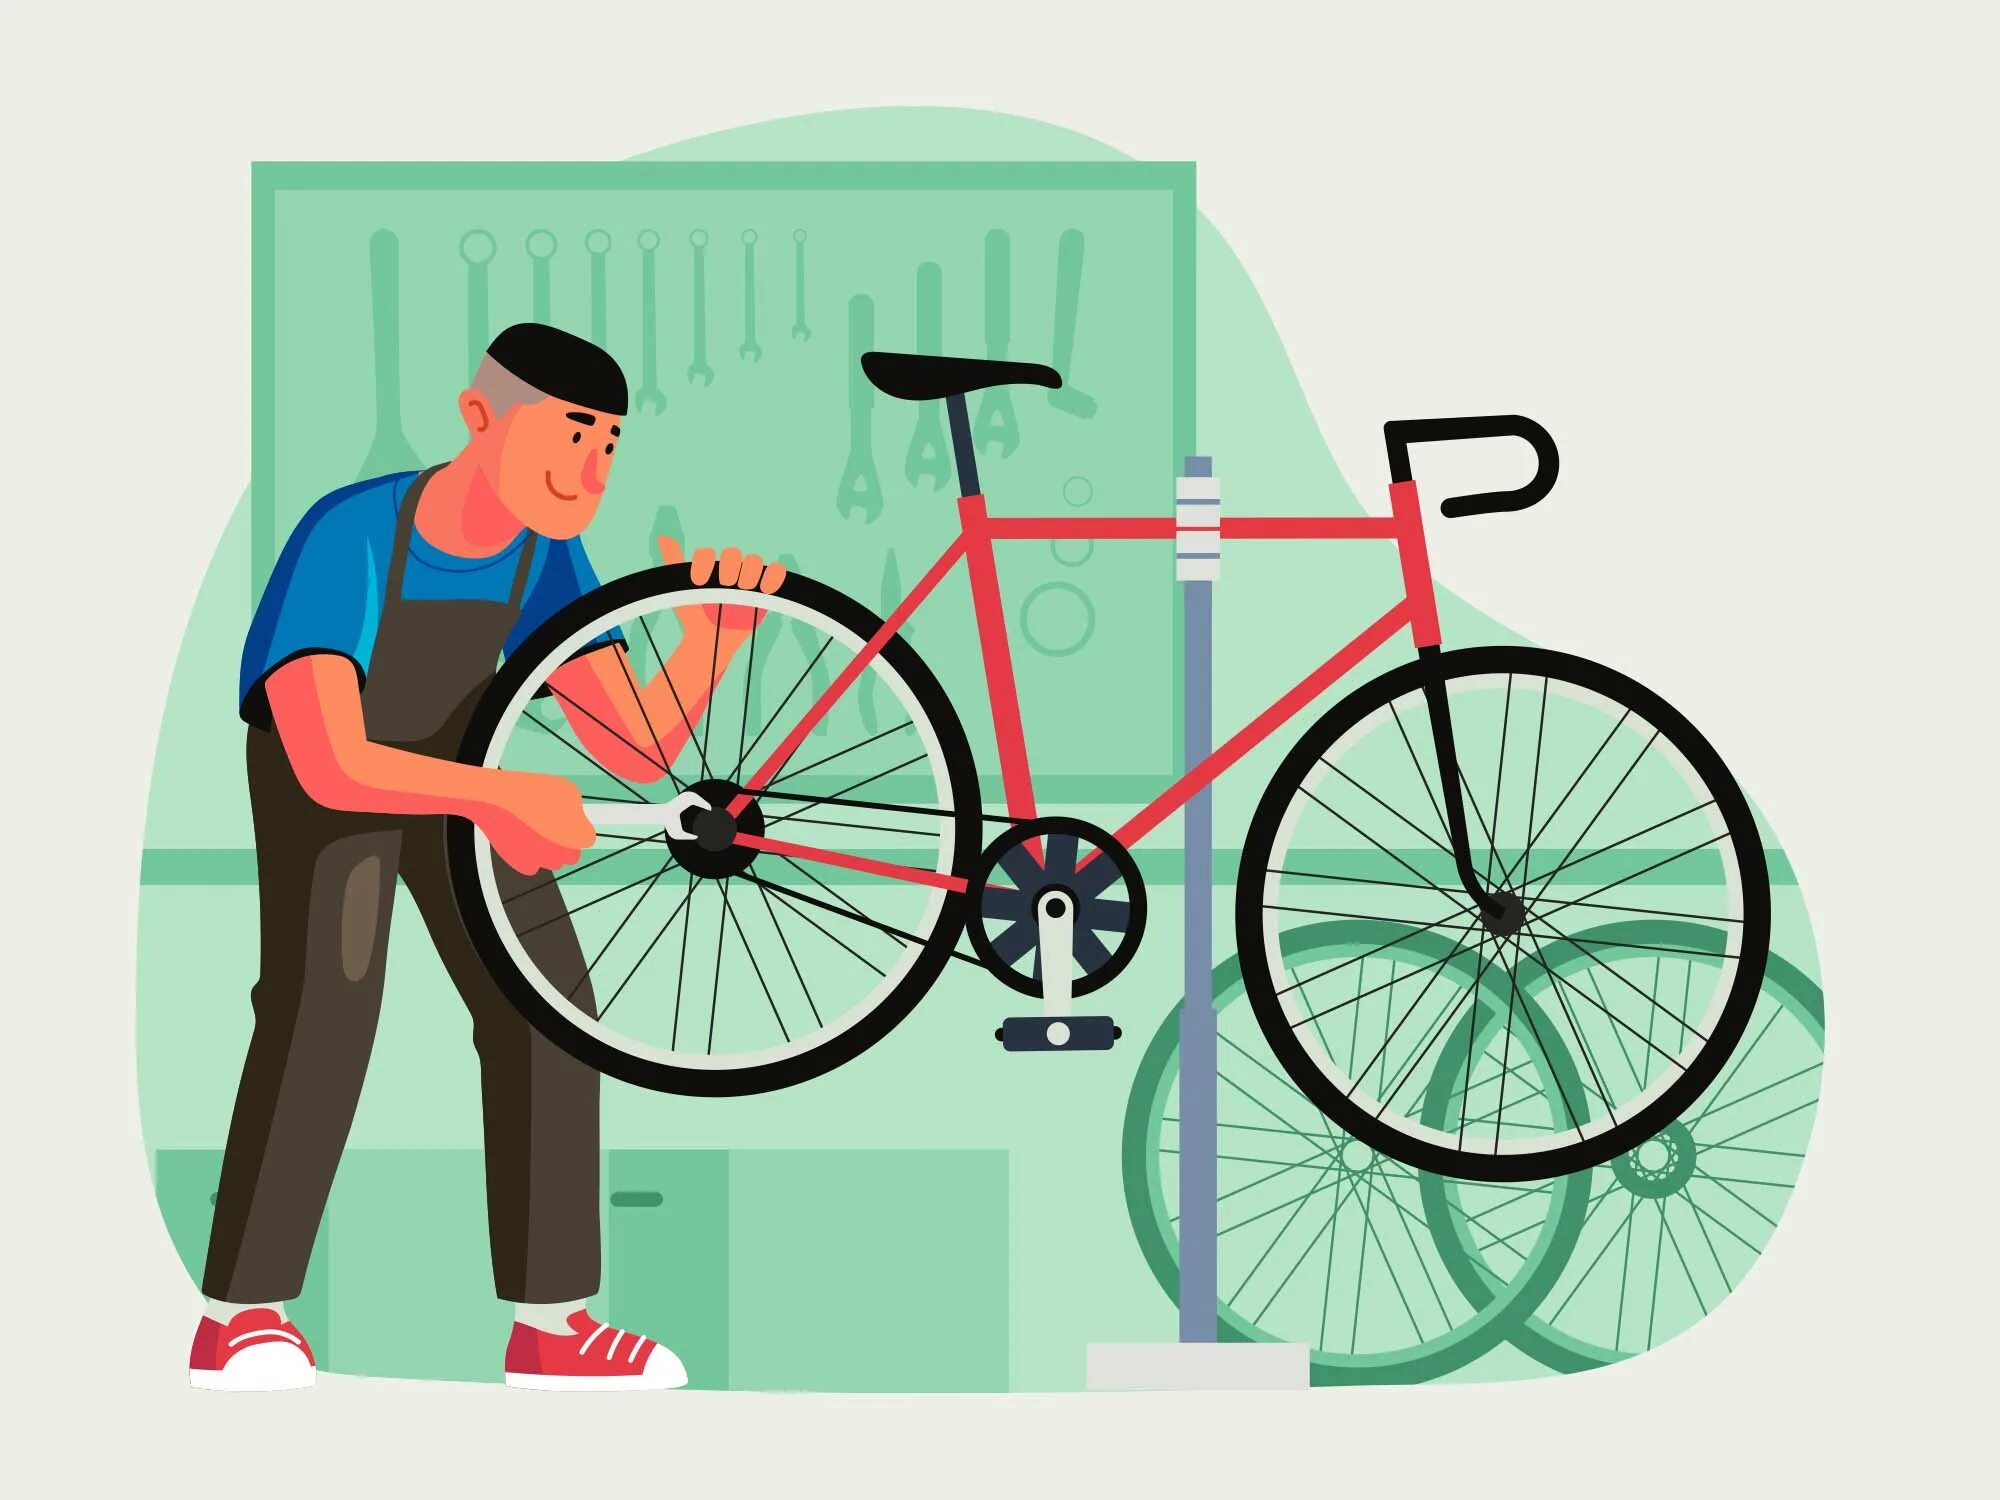 Bike mechanic. Чинит велосипед. Велосипед в иллюстраторе. Починка велосипеда. Отремонтированный велосипед.